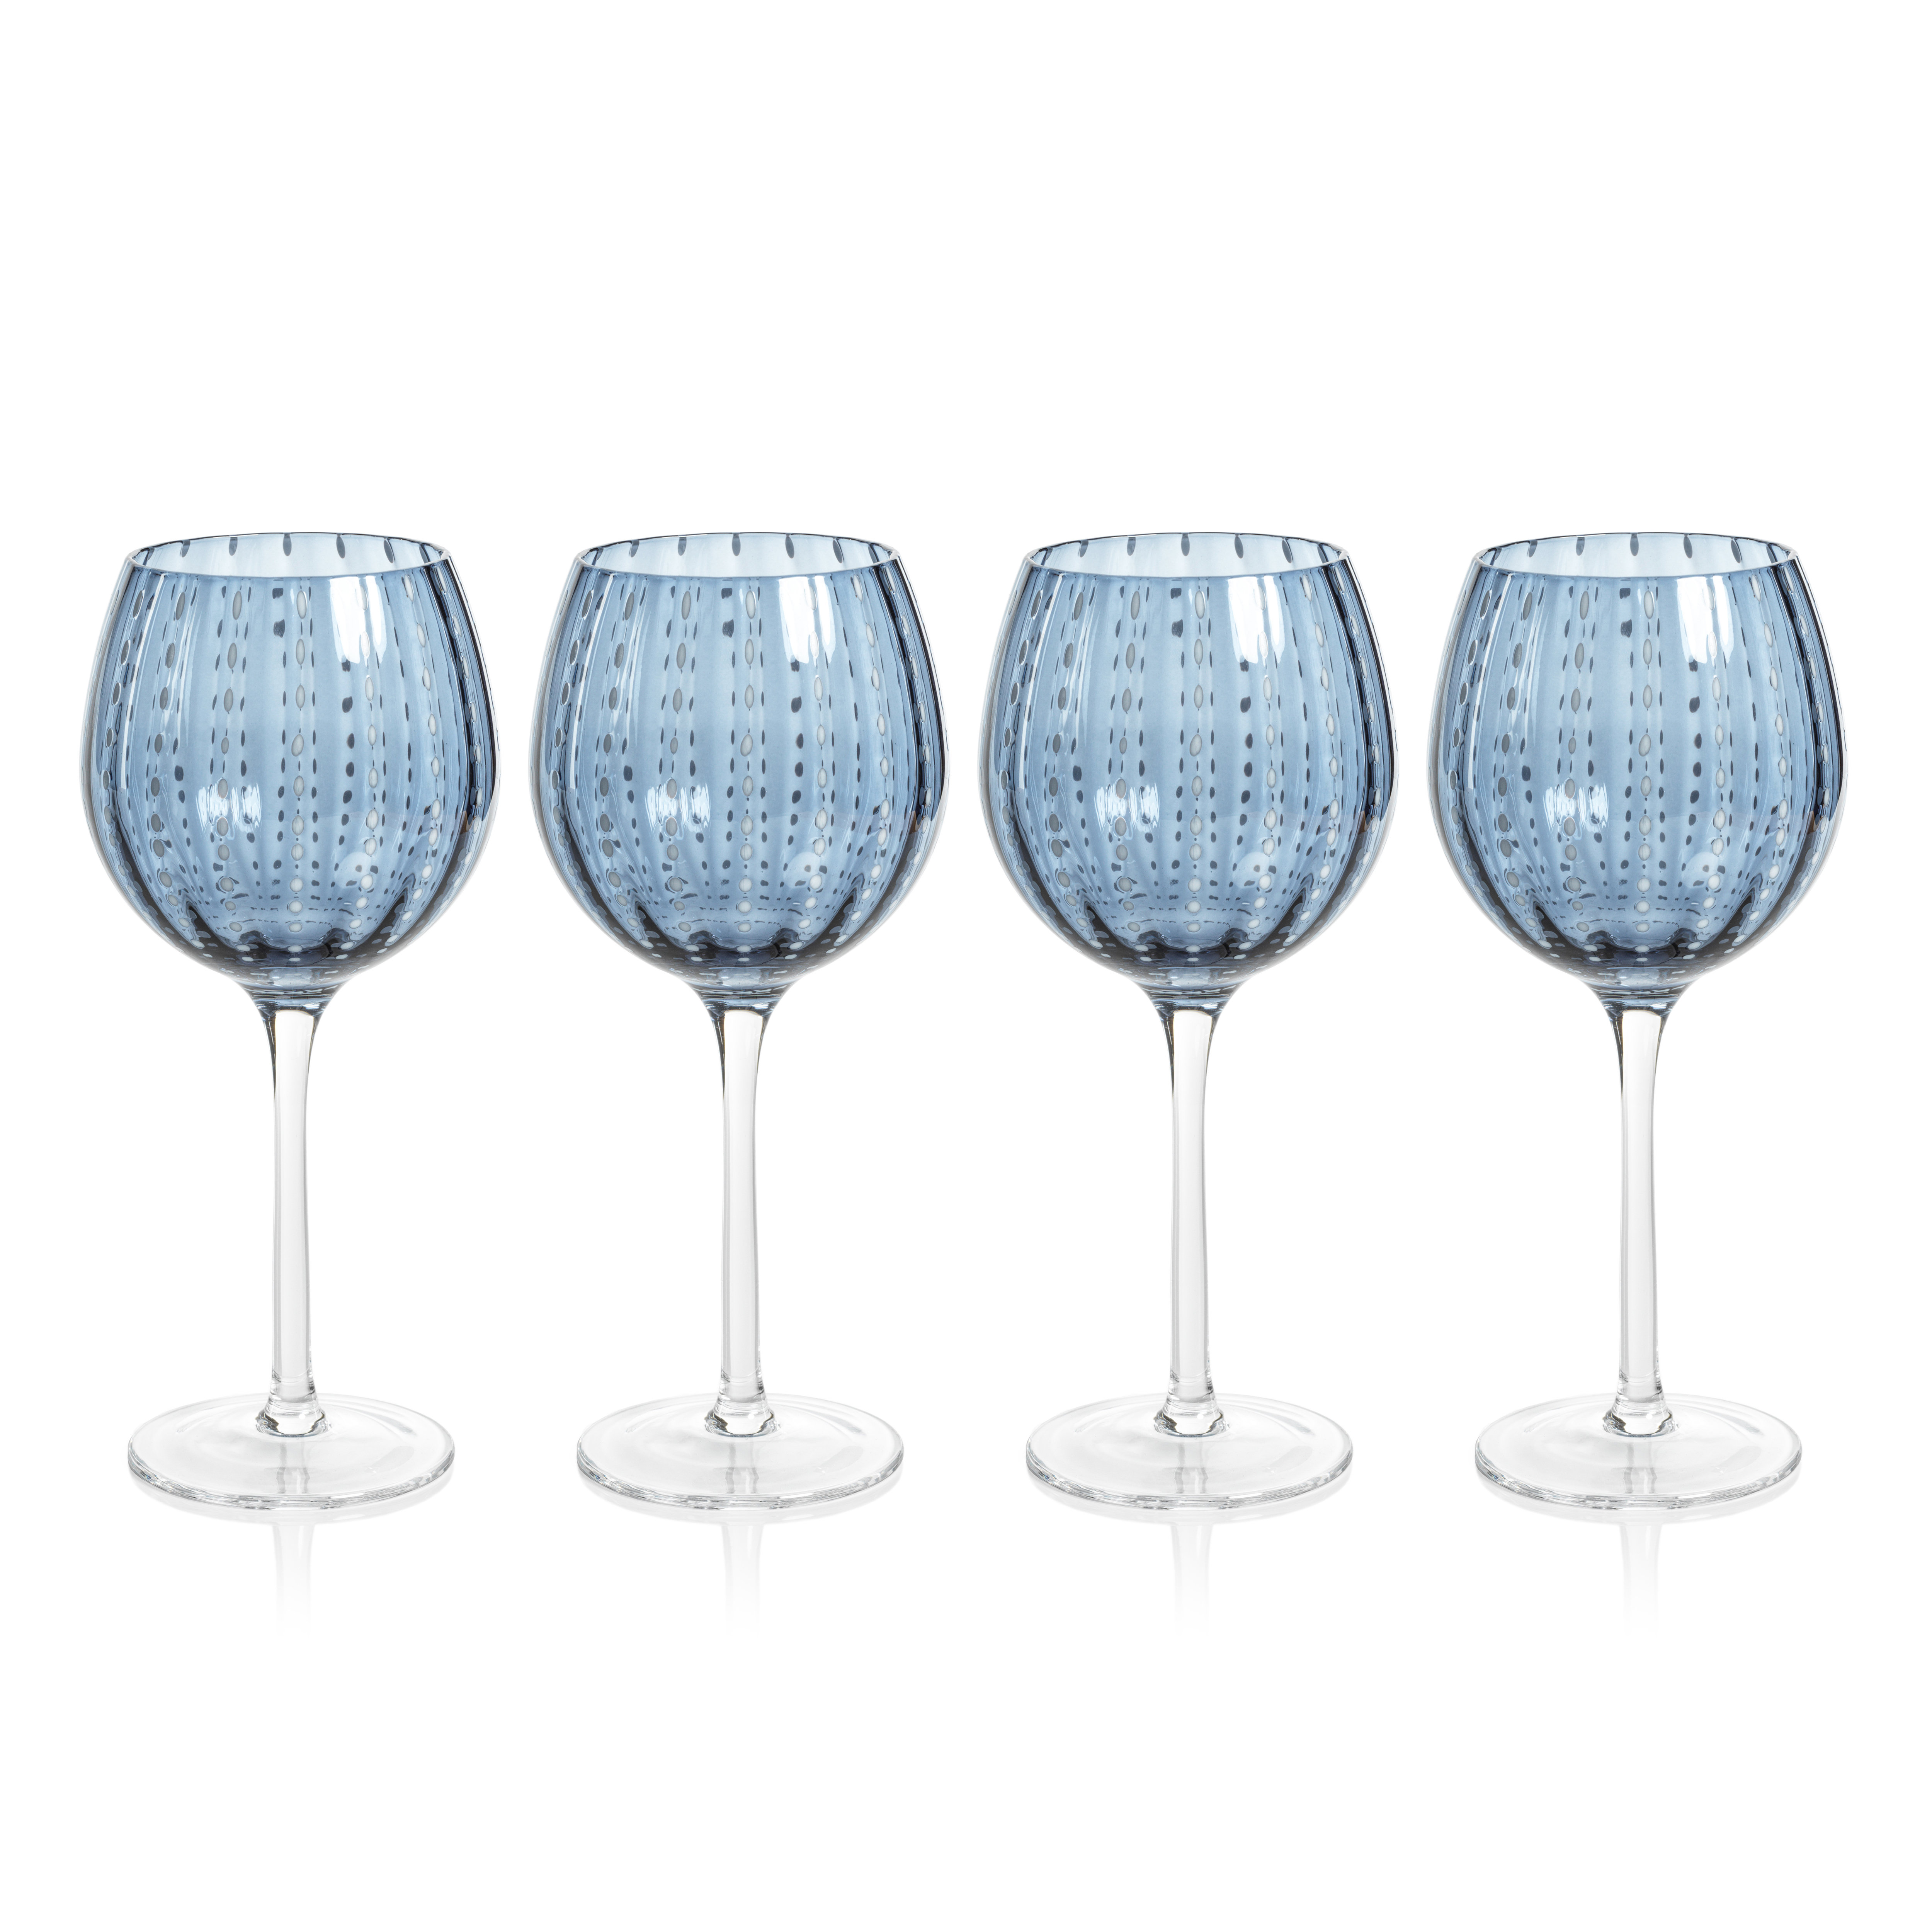 GIFORYA Wine Glasses Set of 4,13 OZ Crystal Clear Wine Glasses, Long Stem  Red & White Wine Glasses f…See more GIFORYA Wine Glasses Set of 4,13 OZ